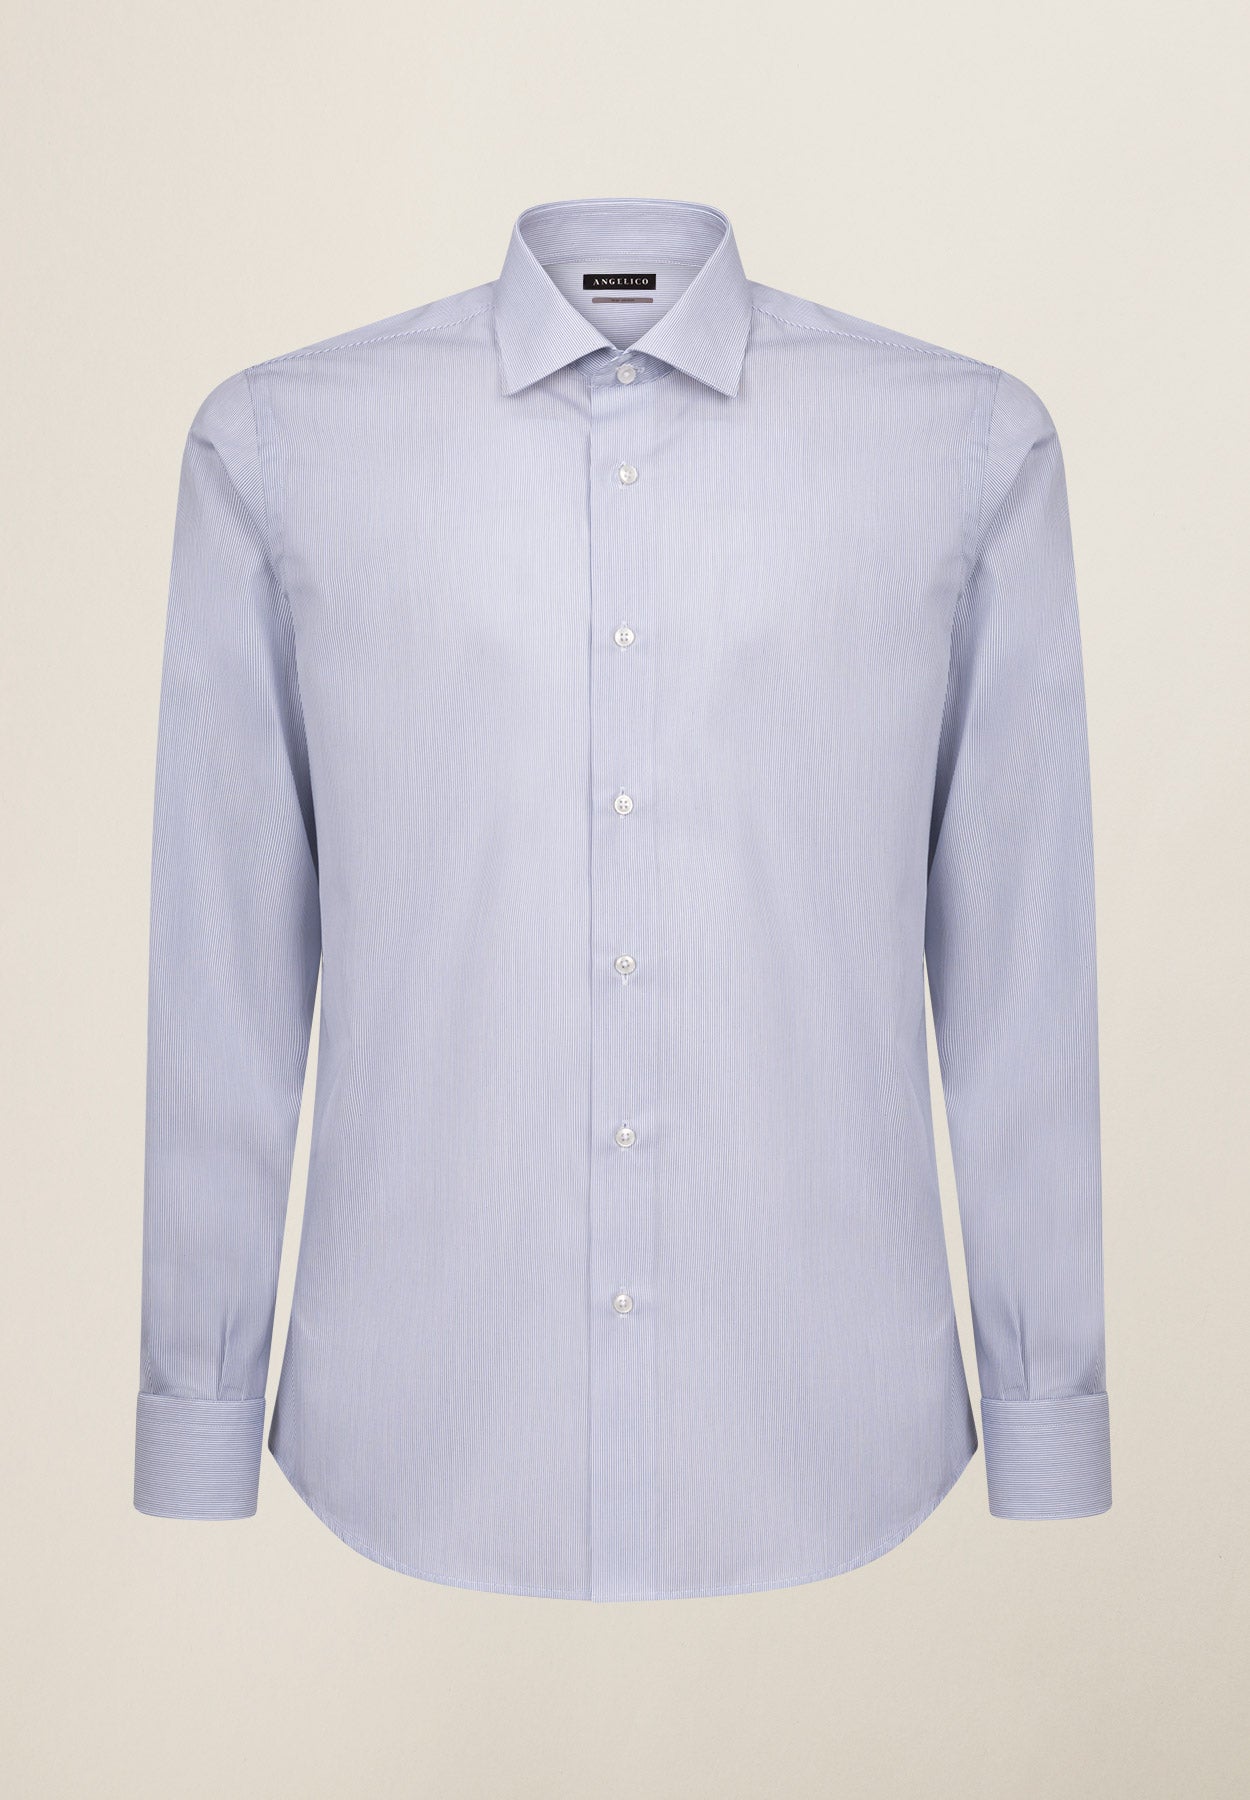 Camicia bianca rigata blu cotone no stiro slim fit